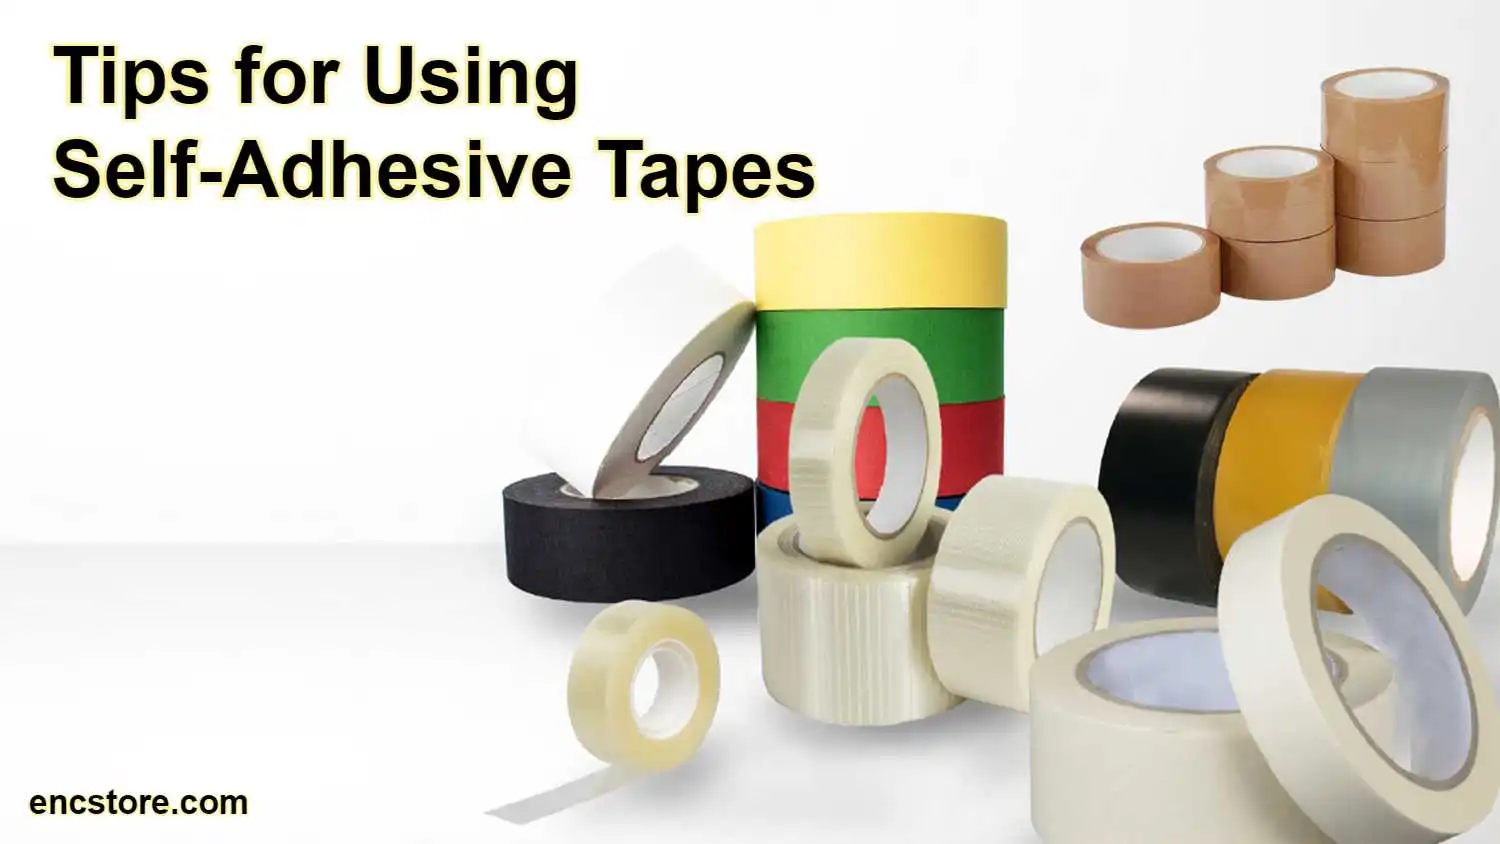 Self-Adhesive Tapes